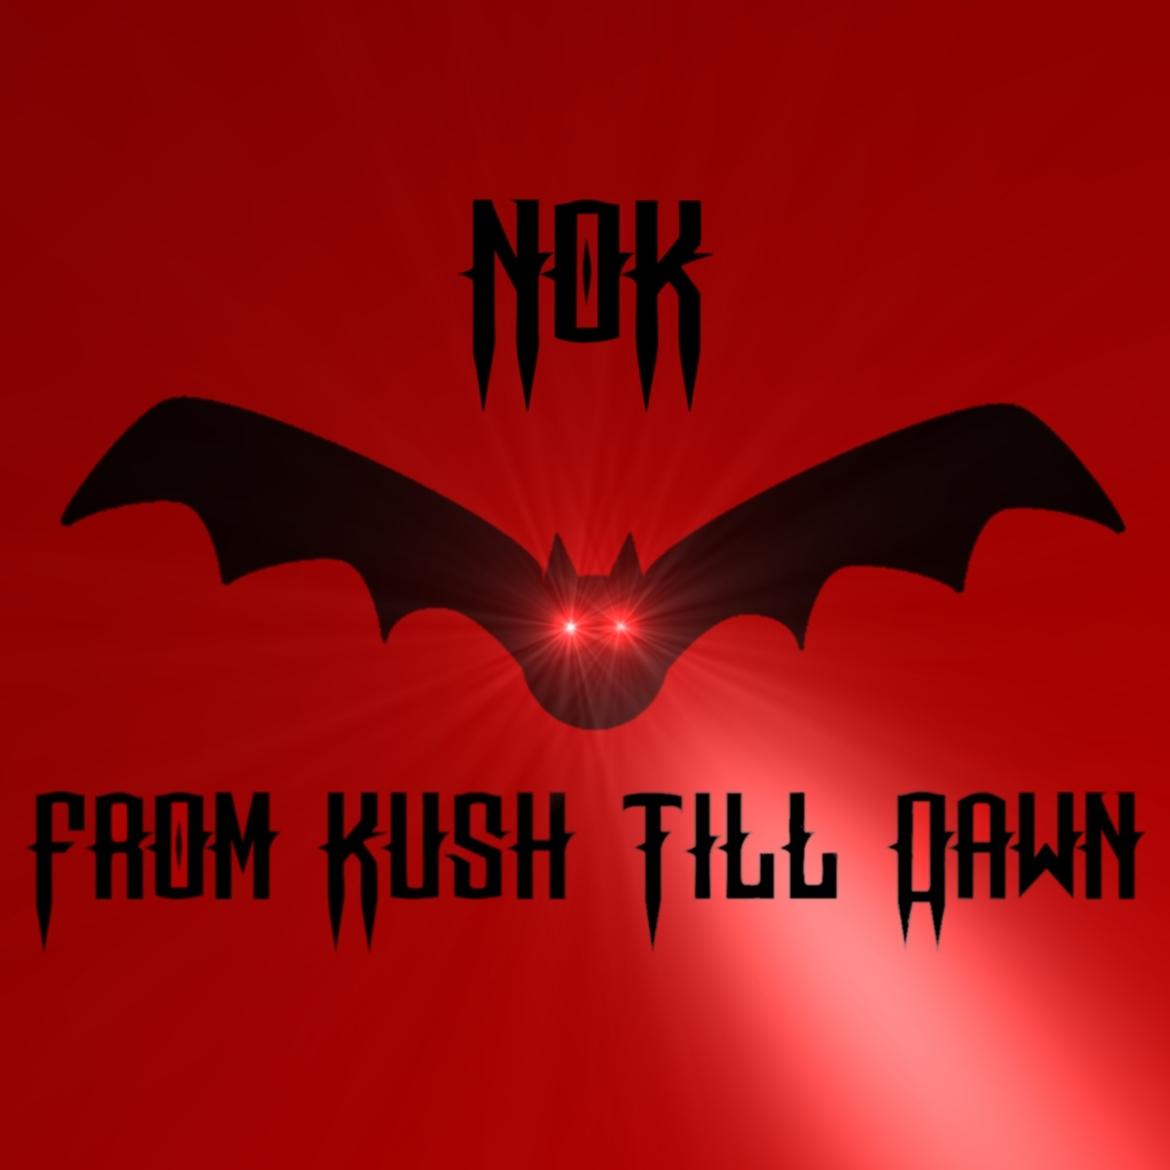 NOK47 From Kush Till Dawn